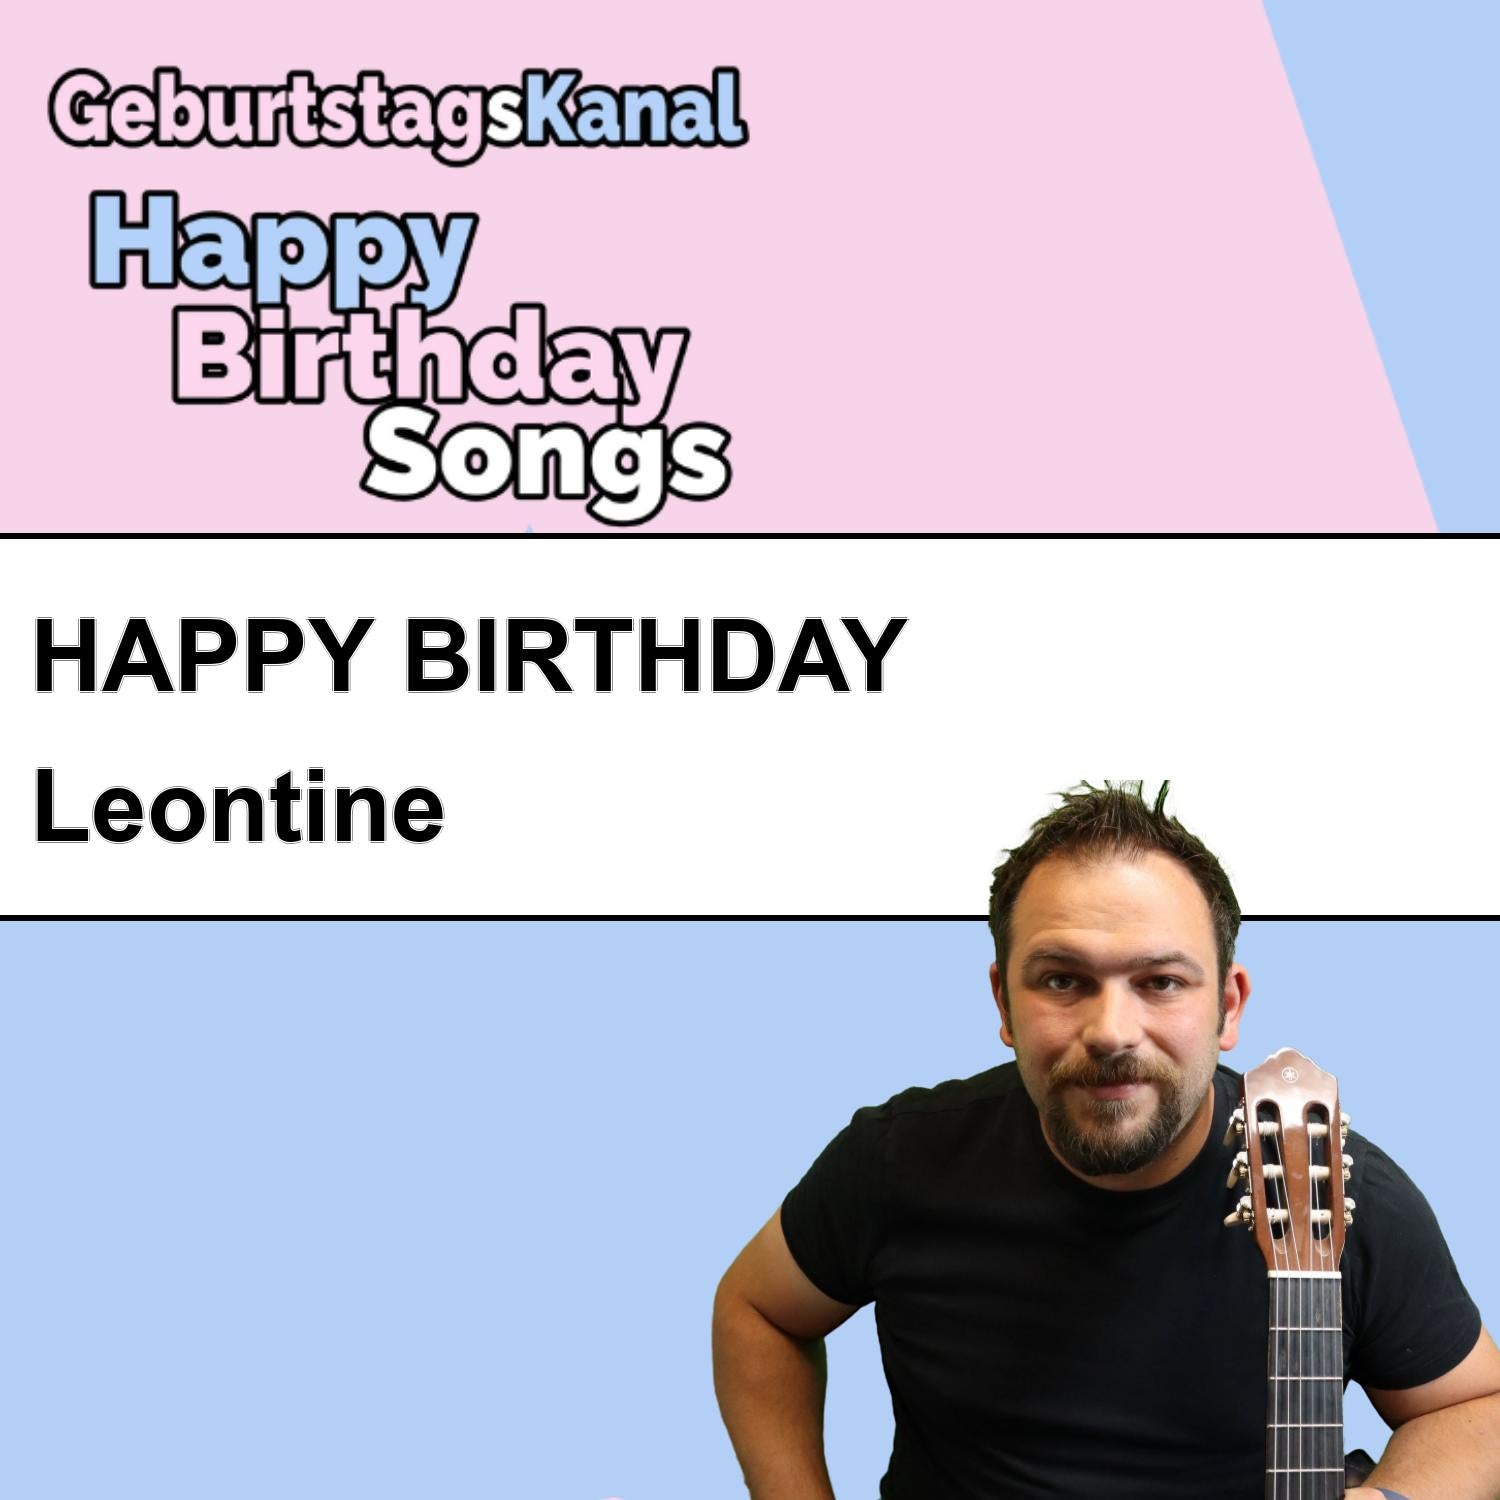 Produktbild Happy Birthday to you Leontine mit Wunschgrußbotschaft